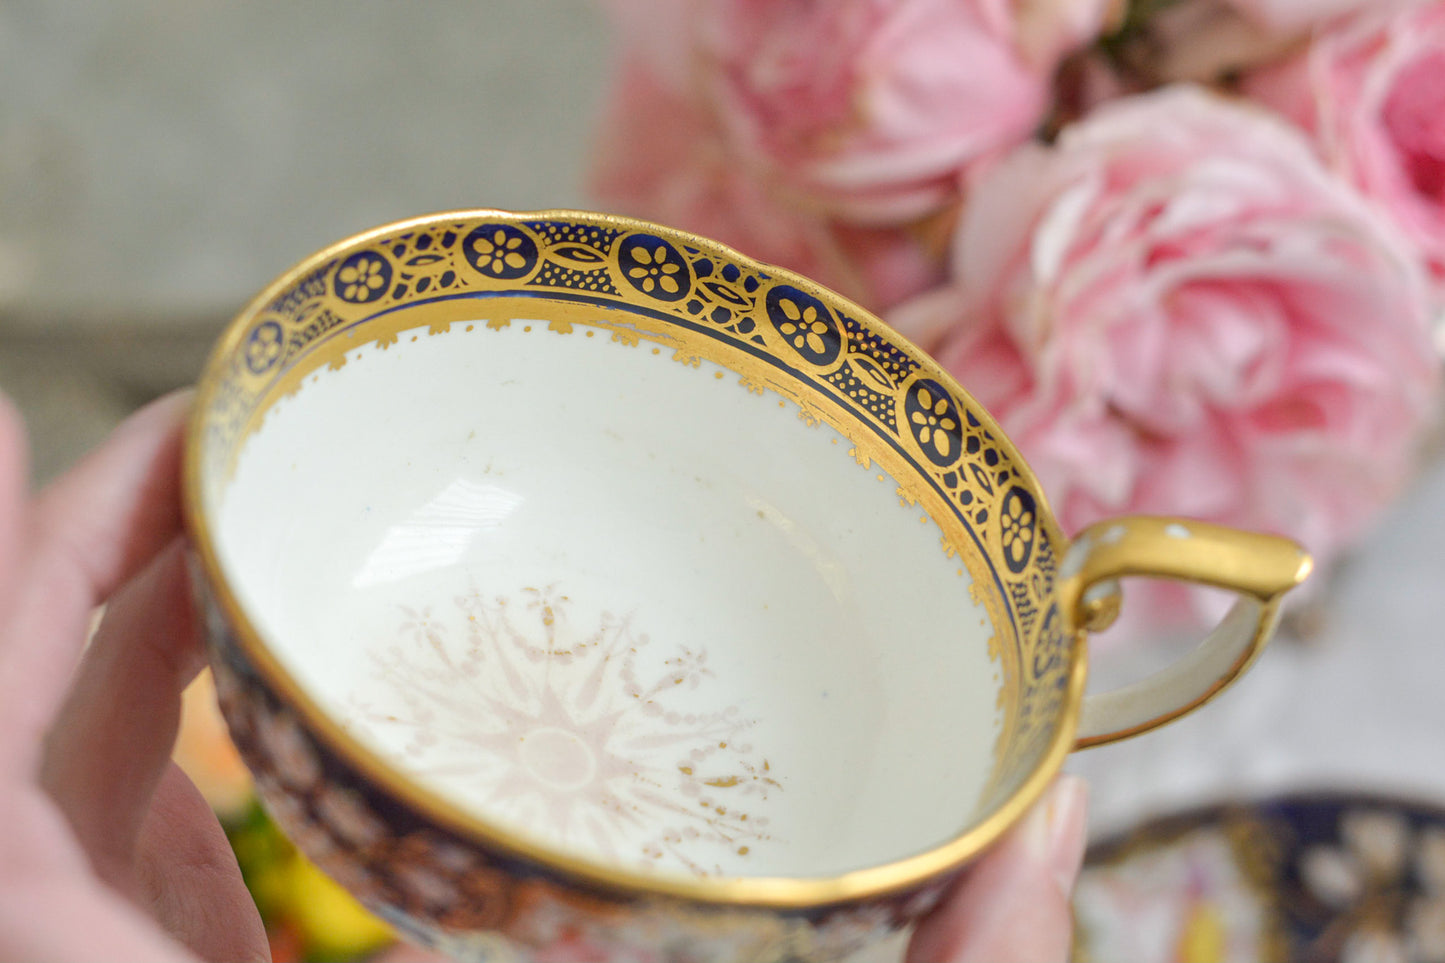 コールポートの1820年代に作られたとっても貴重なお品。コバルトブルー地に白抜きの立体的なお花模様、エナメル画のブーケは繊細なタッチで大変美しく描かれています。まさしく貴族のティータイムのためのカップ。当時の持ち主の大切な財産だったことでしょう。そしてこちらは実際に使われていたと思われます。金彩が剥がれていたり、ソーサーはヒビがあるけれど、よく２００年間受け継がれてここに来てくれたと思います。